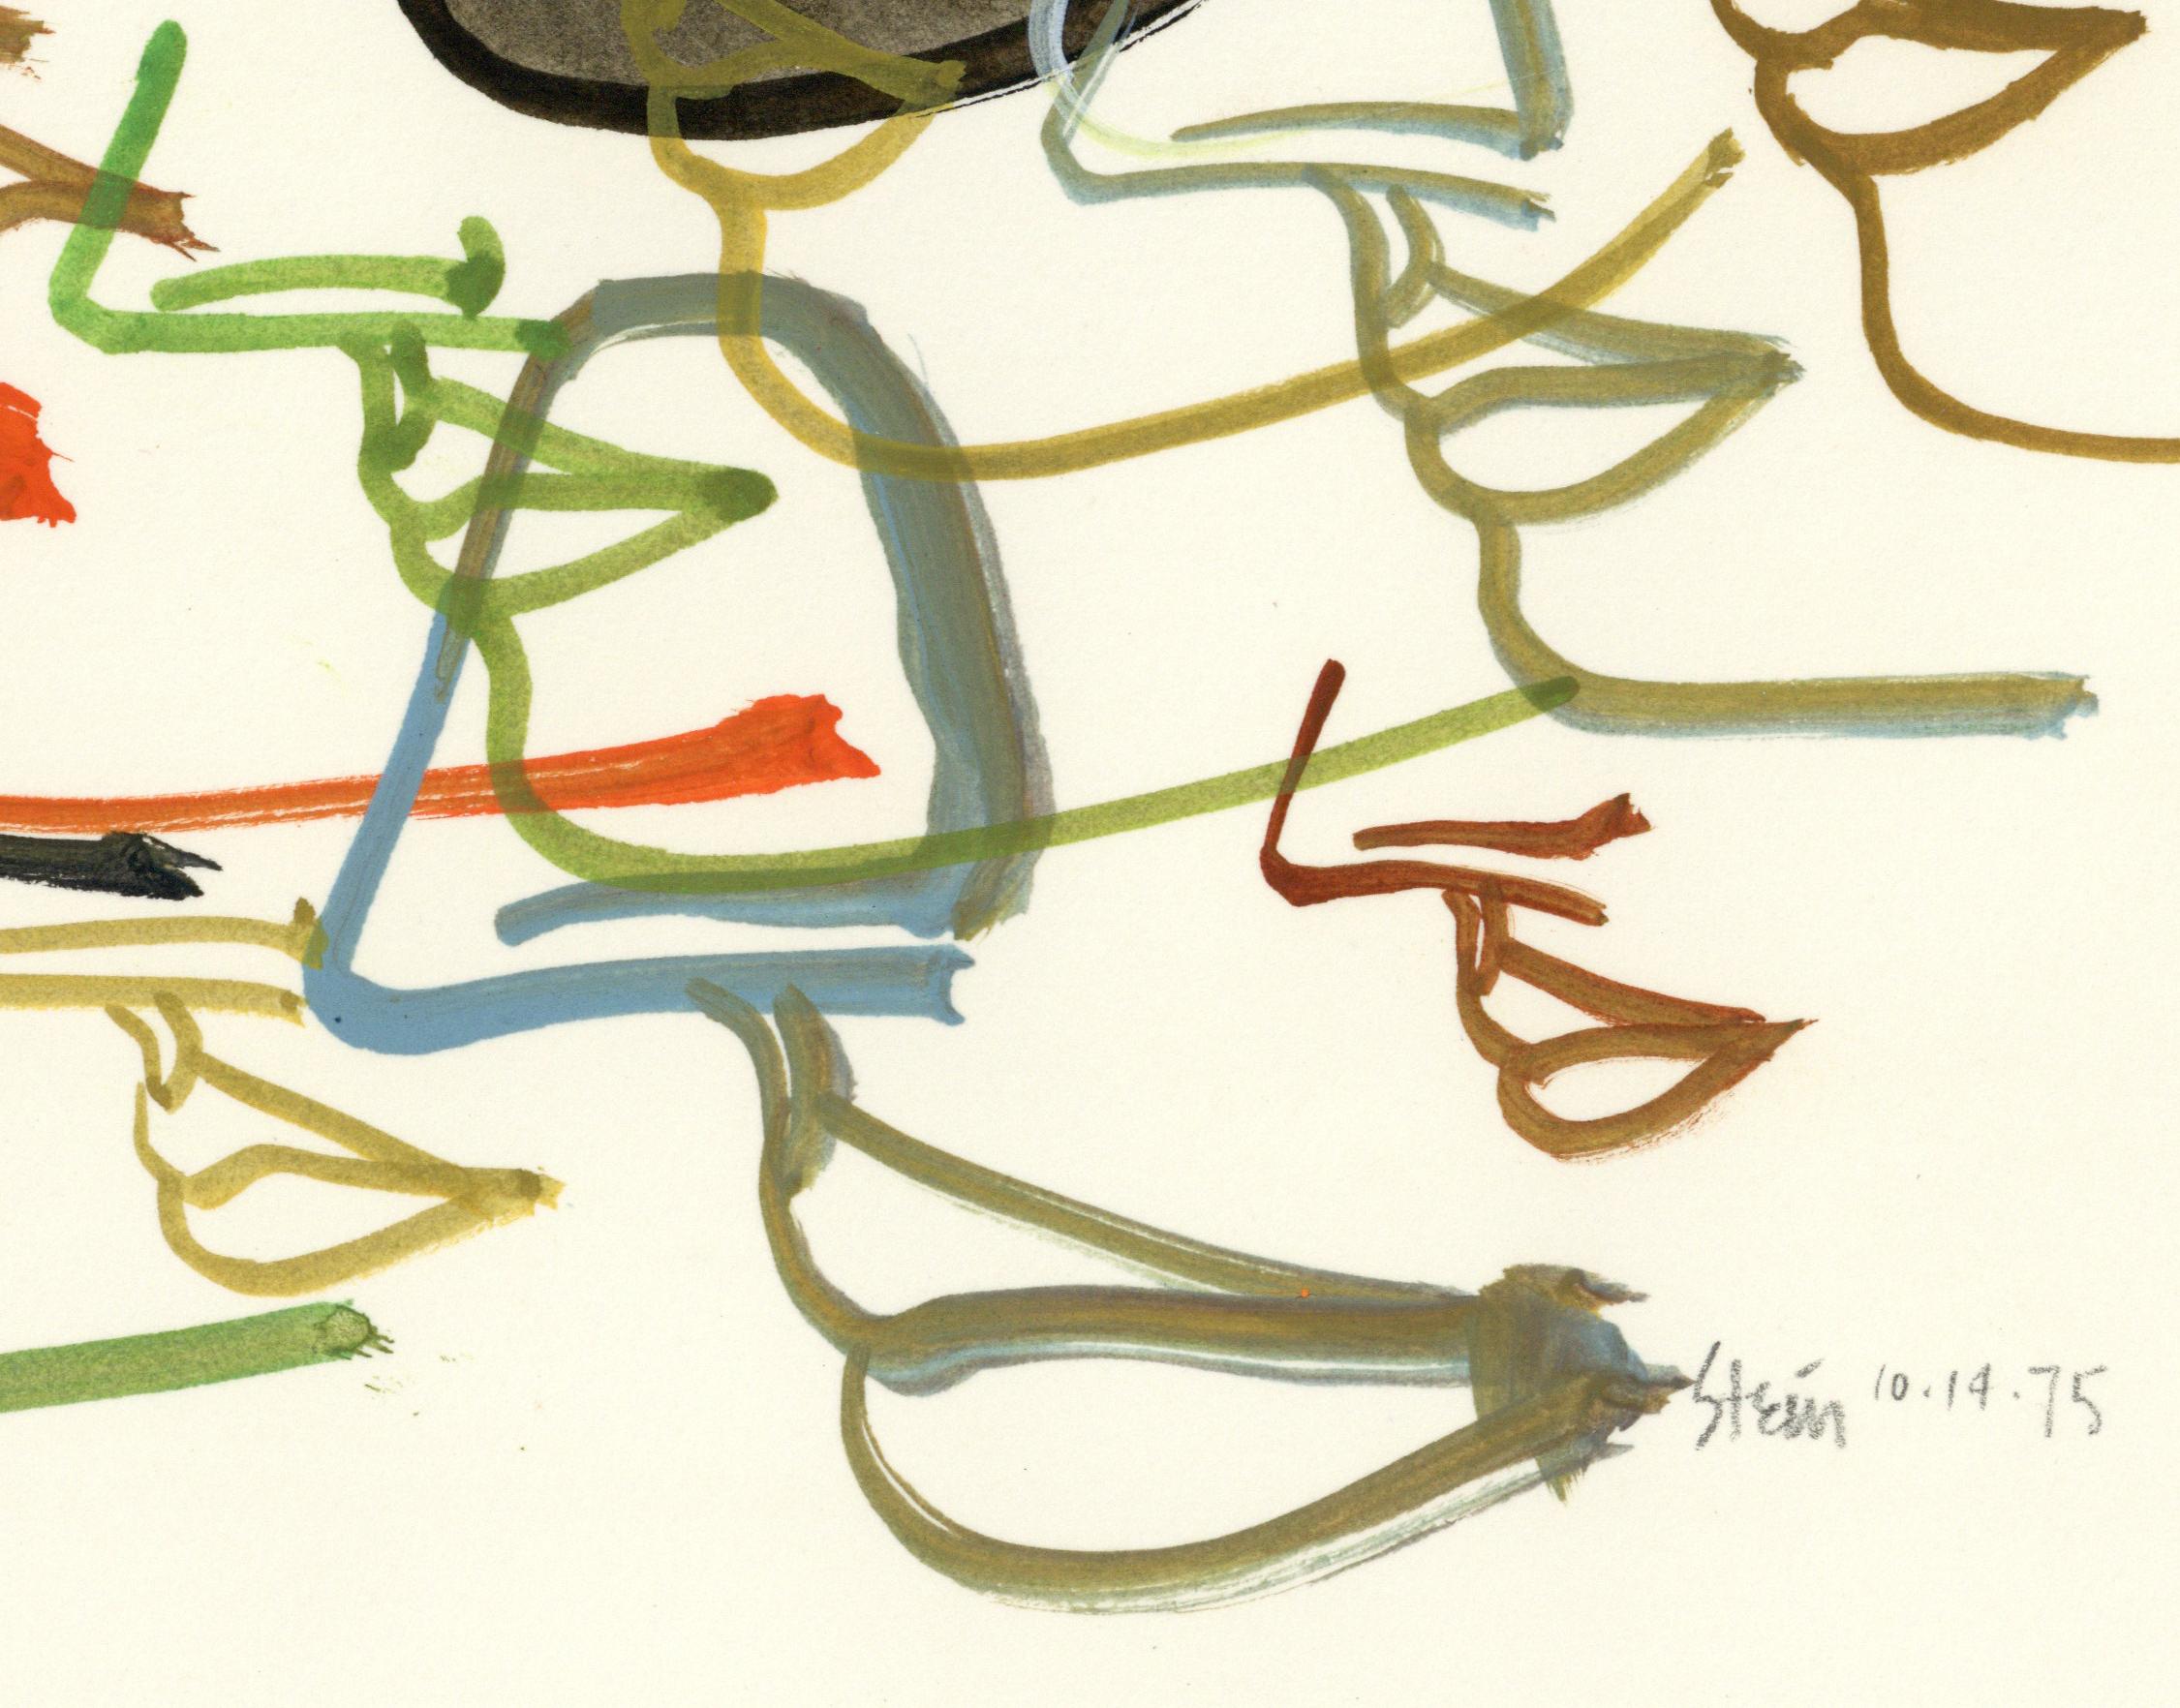 Linda Stein, Profil Fliegen 446.091 - Signierte Feministin LGBTQ+ Acrylfarbe auf Papier Zeichnung 

Profile Flying 446.091 stammt aus Linda Steins Serie Profiles - Zeichnungen, Collagen und Gemälde von Gesichtsprofilen, die sie in den 1960er und